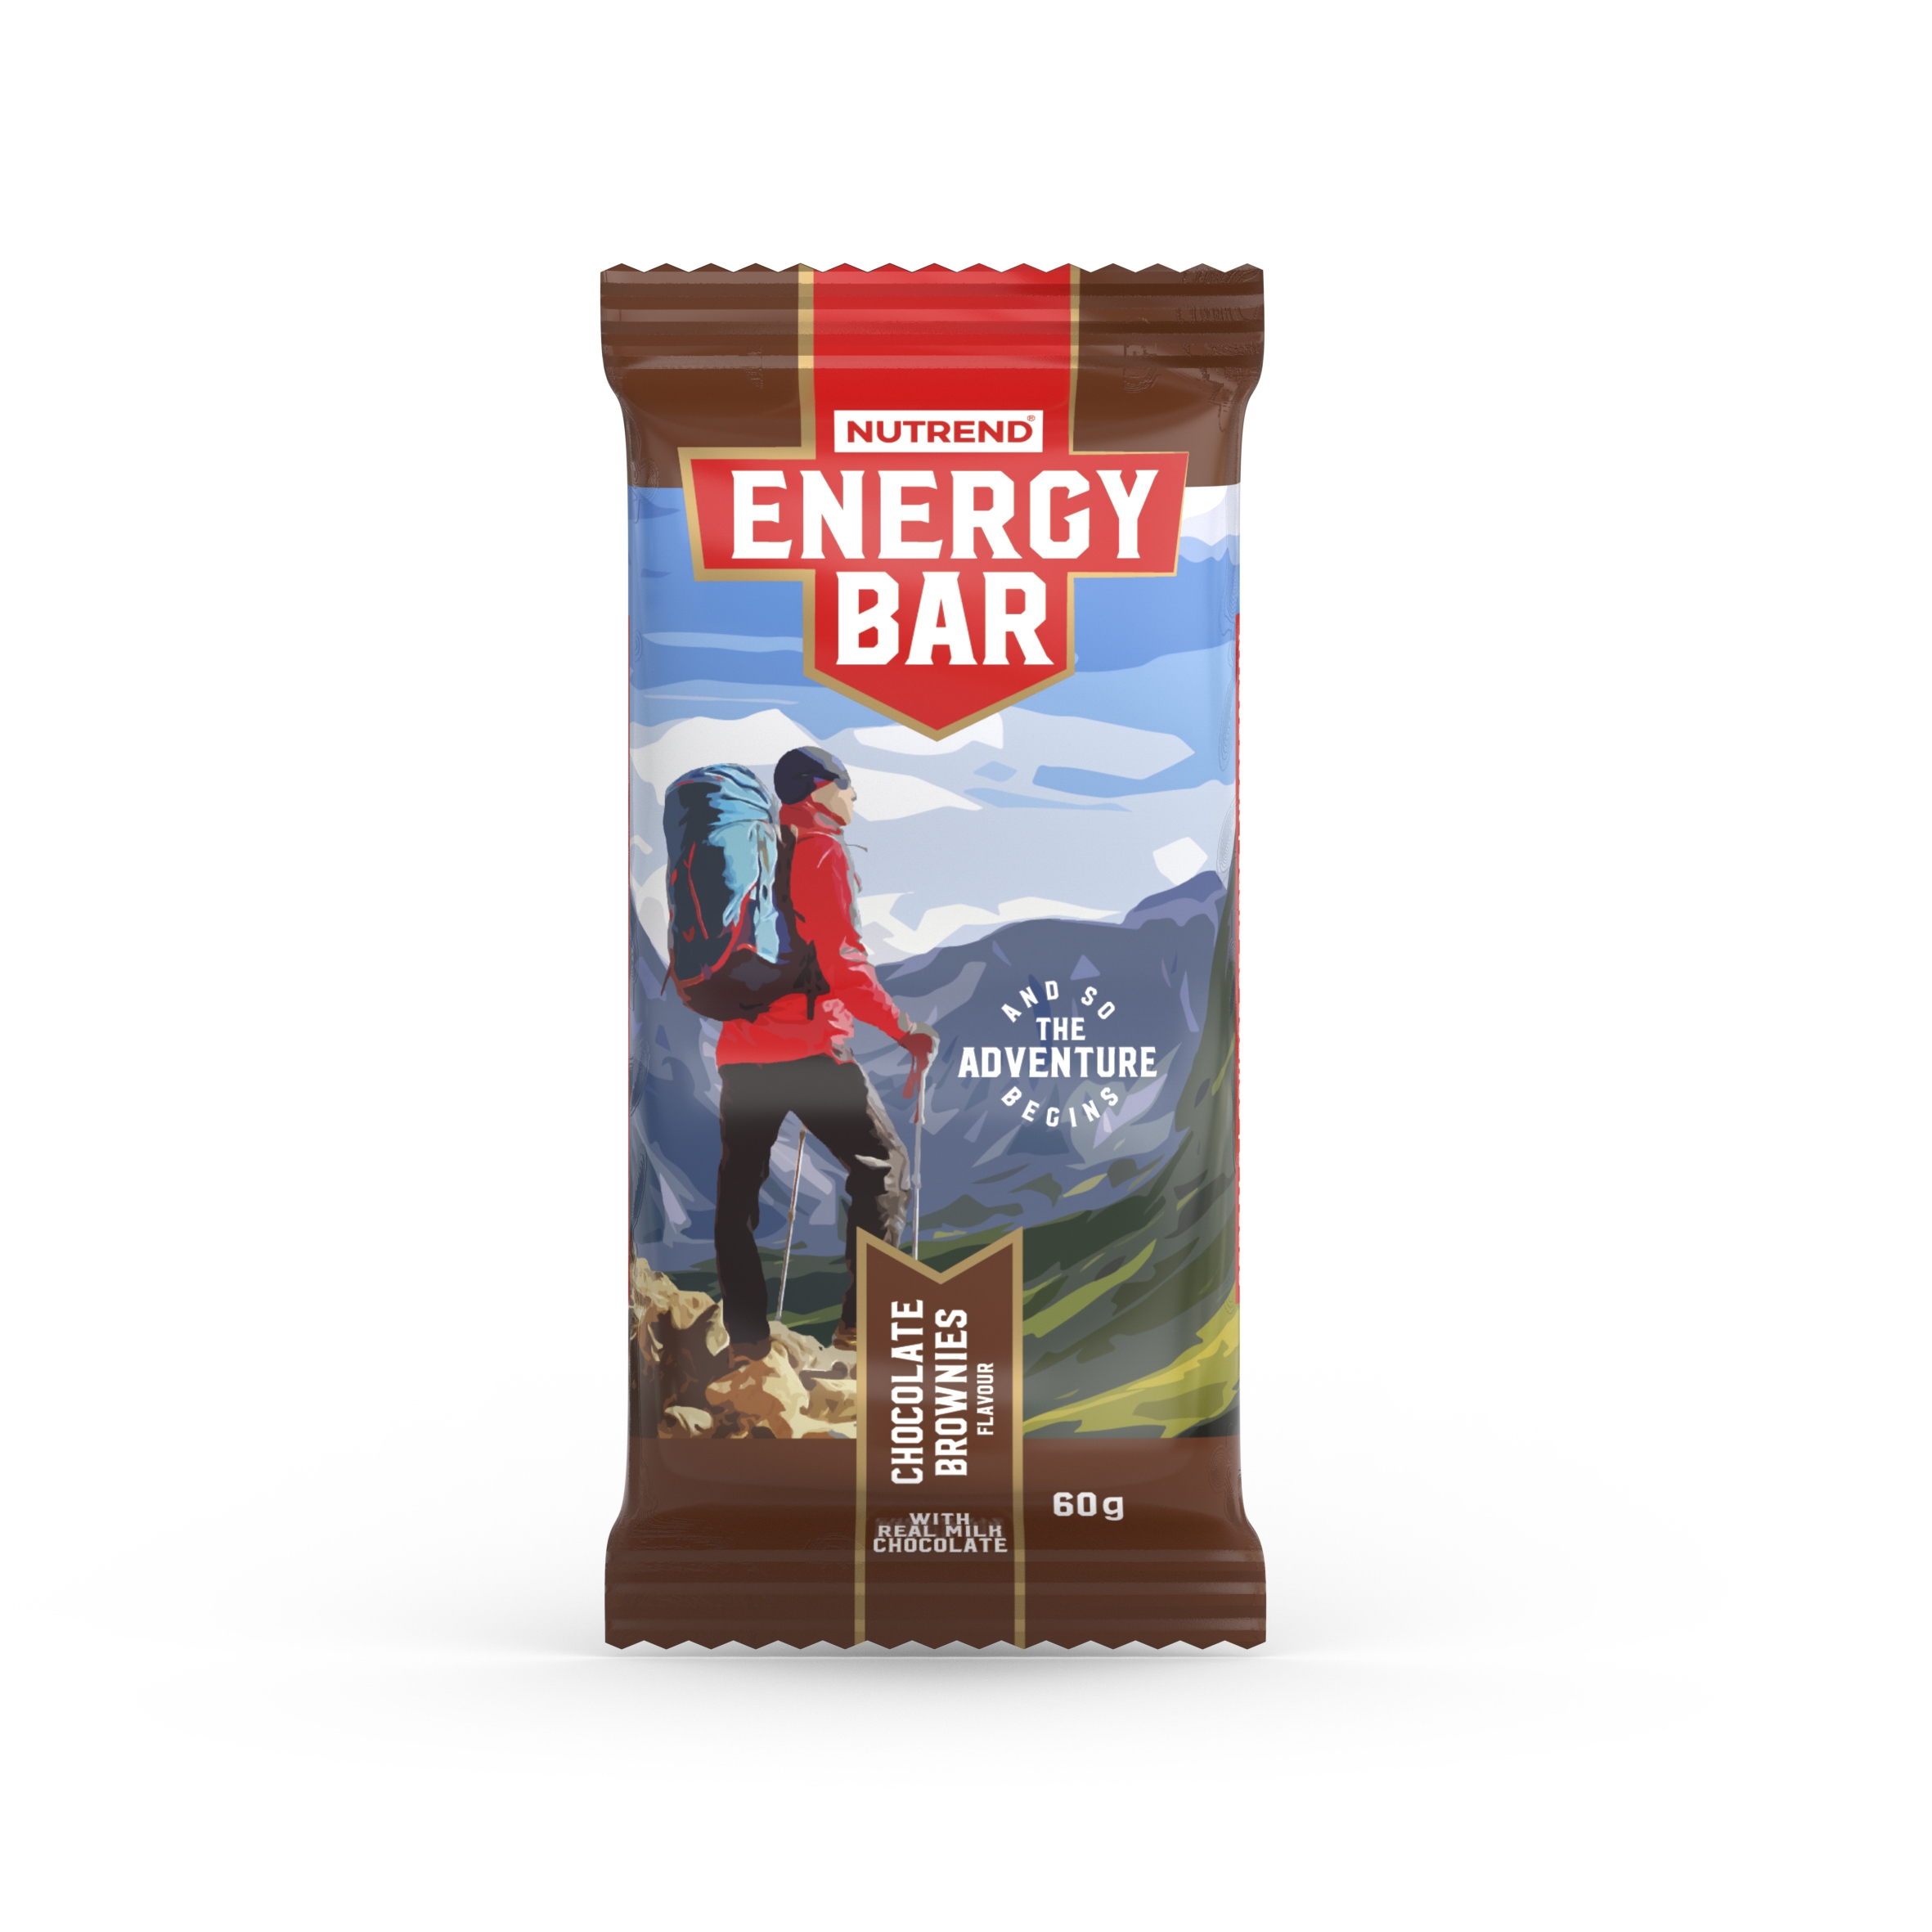 NUTREND tyčinka ENERGY BAR, 60g, čokoládové brownies Typ: tyčinky, určení: doplnění energie, použití: během výkonu